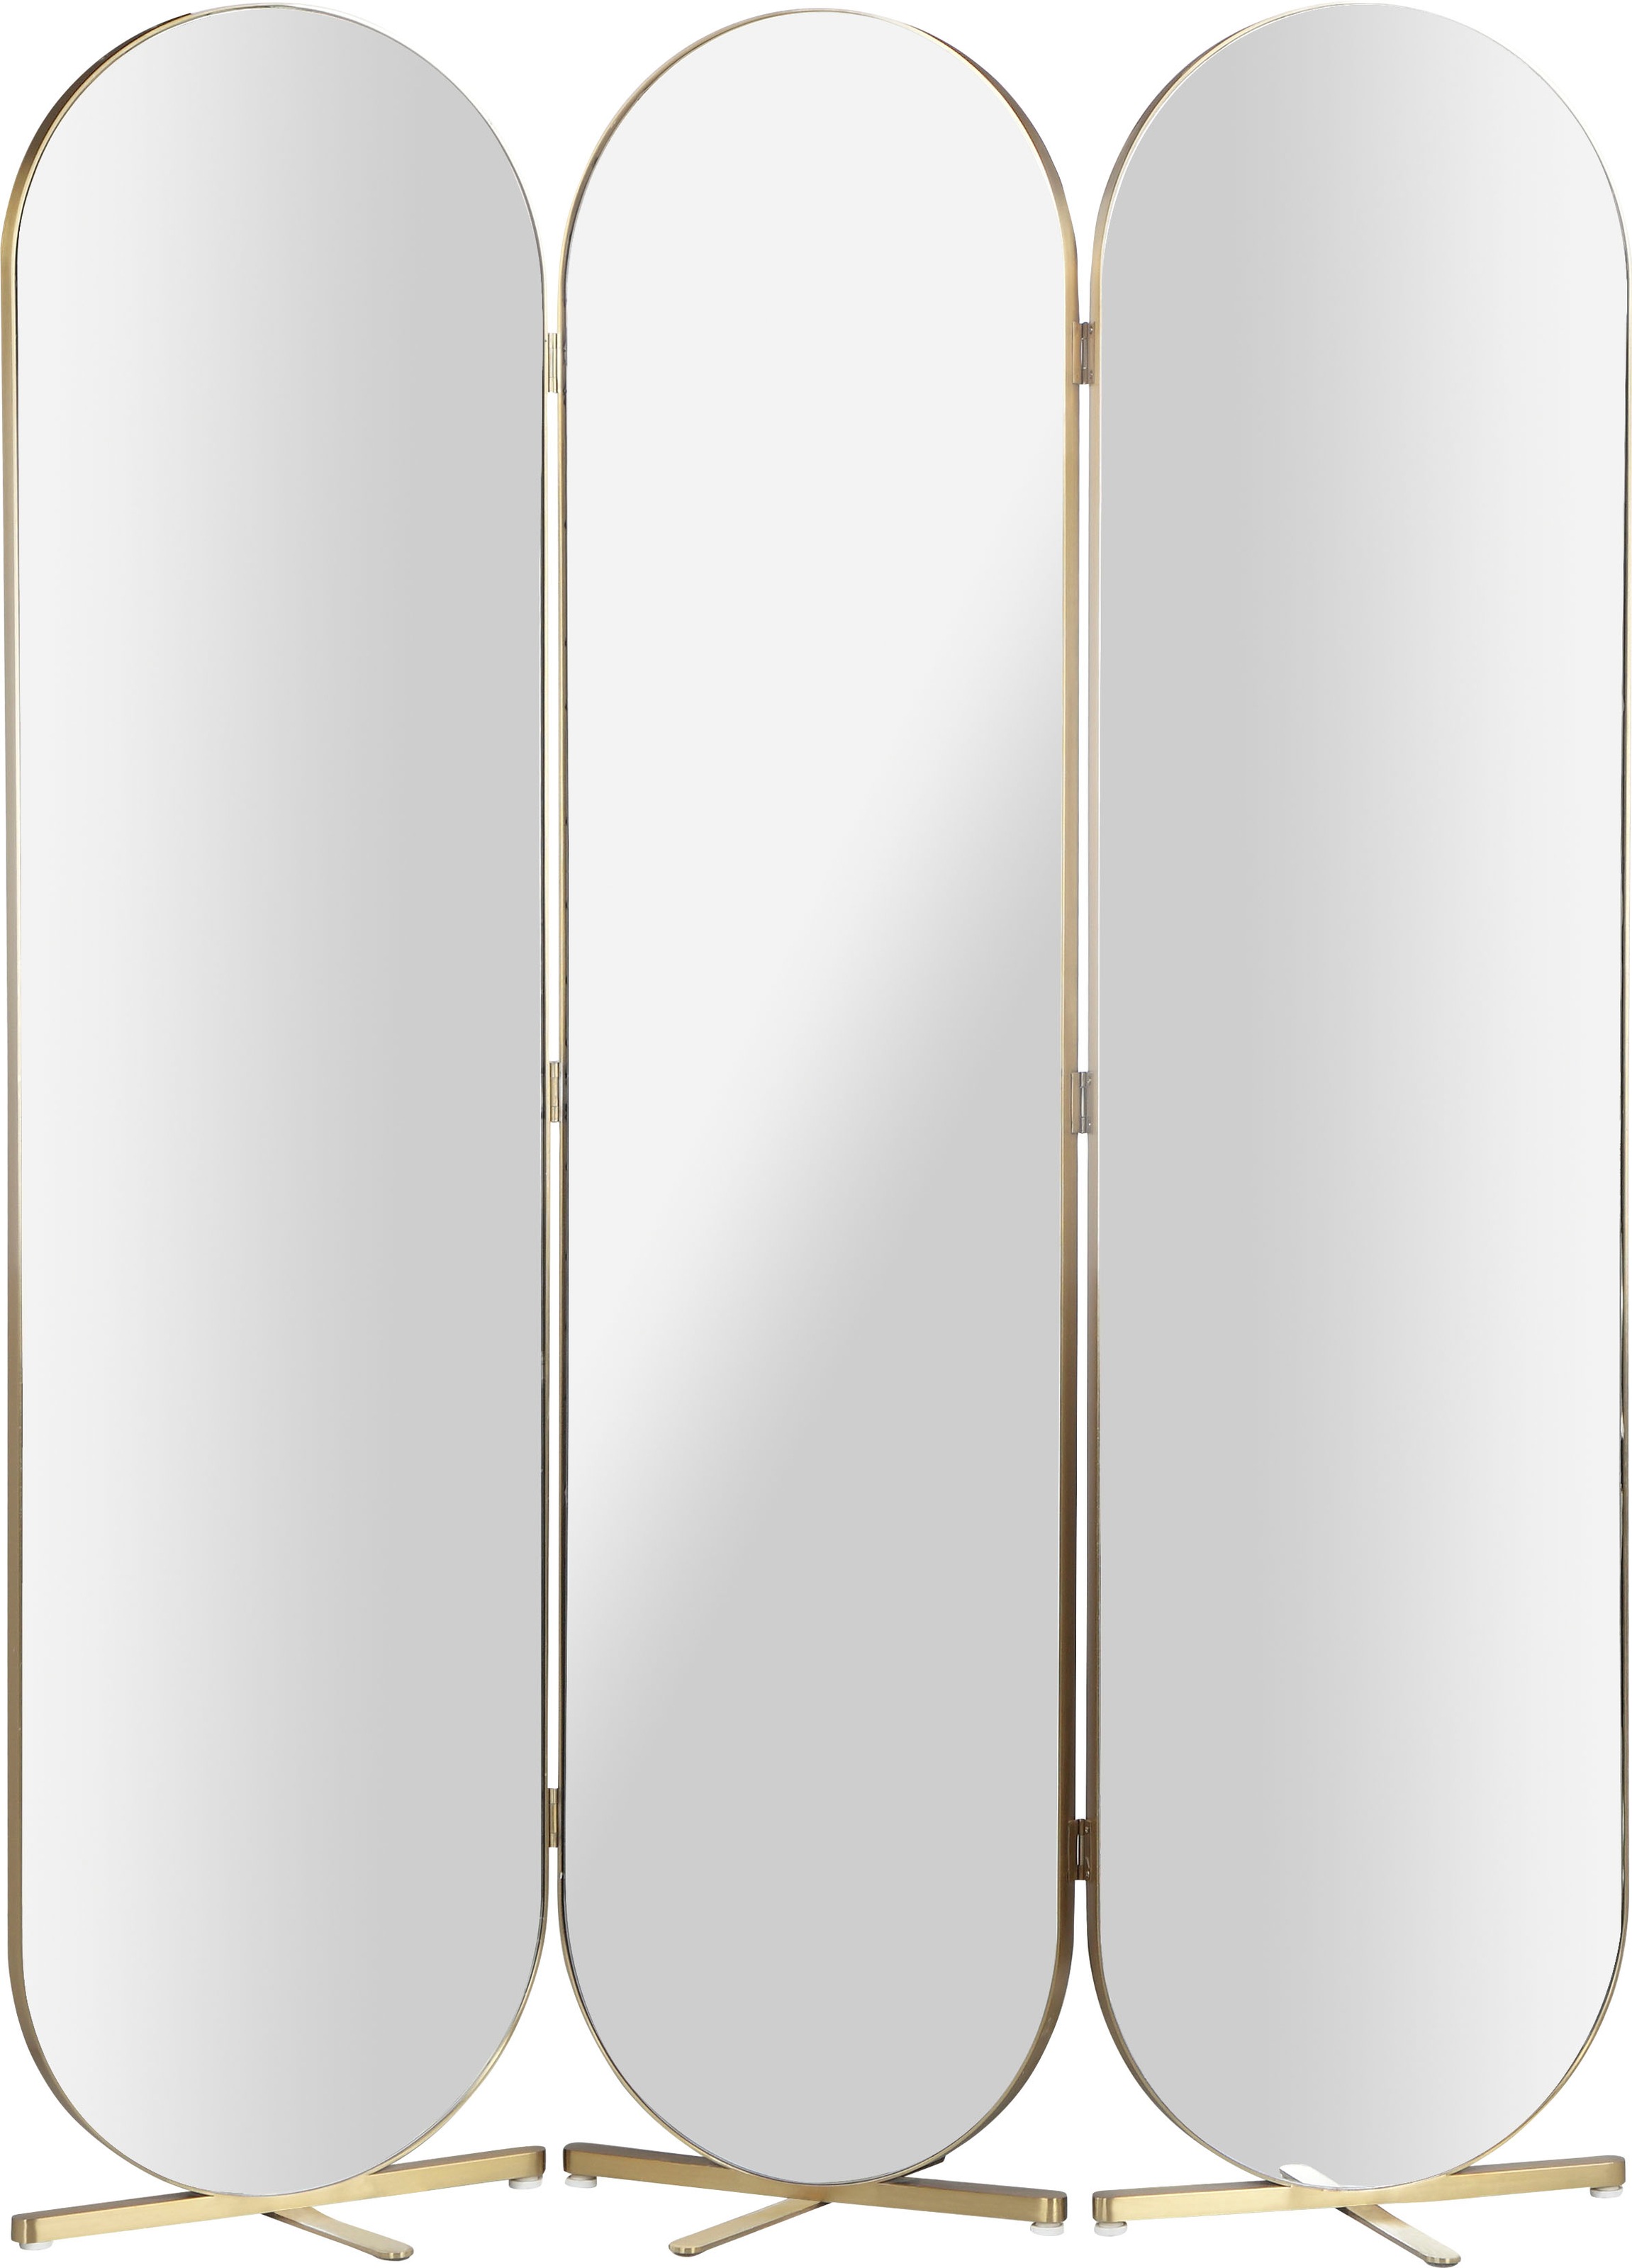 Guido Maria Kretschmer Home&Living Raumteiler, ovale Spiegelflächen, Rückseite mit Samtvelours Bezug, Breite 138,5 cm